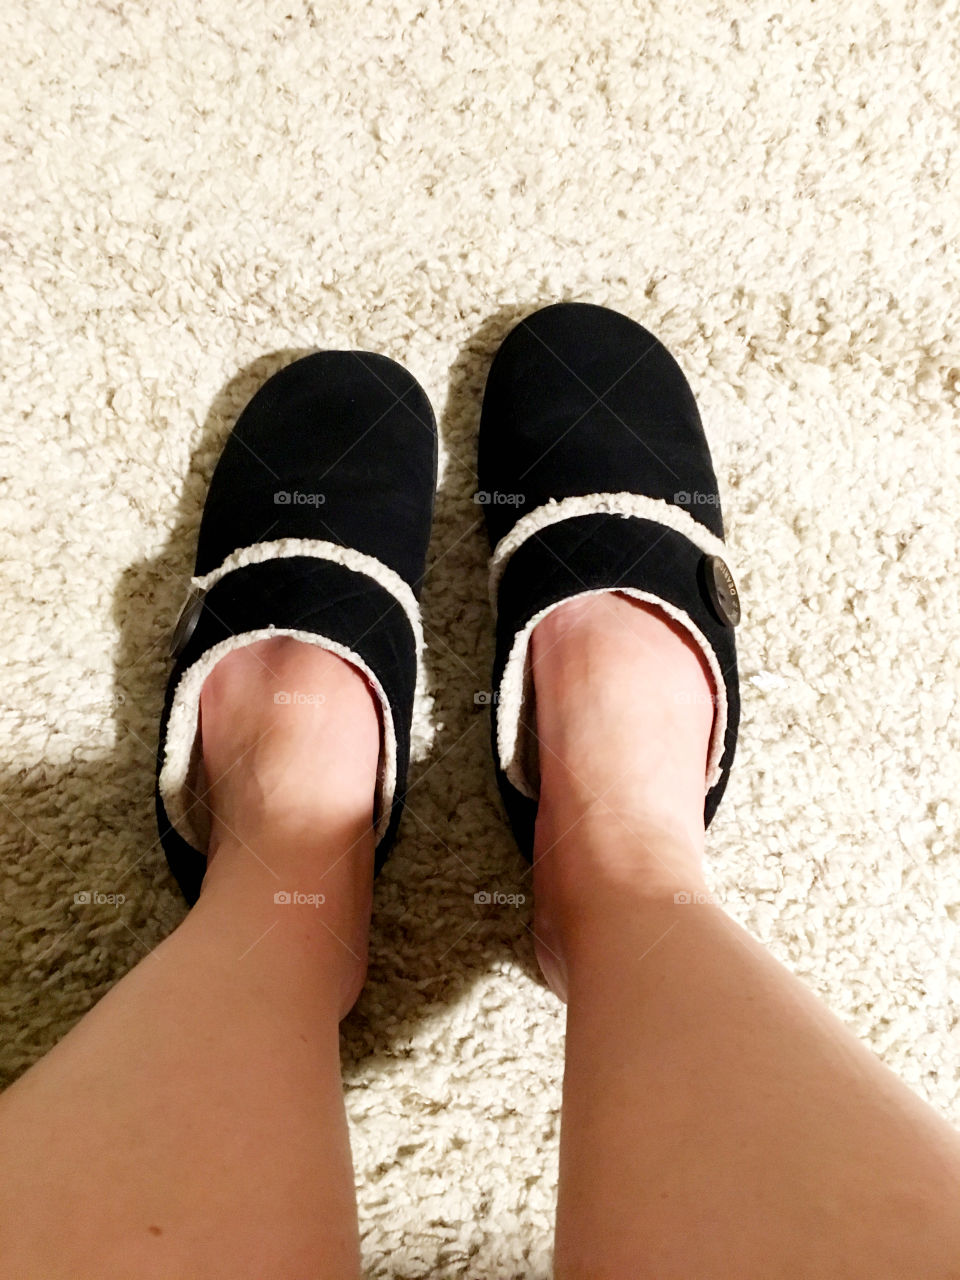 Morning slippers